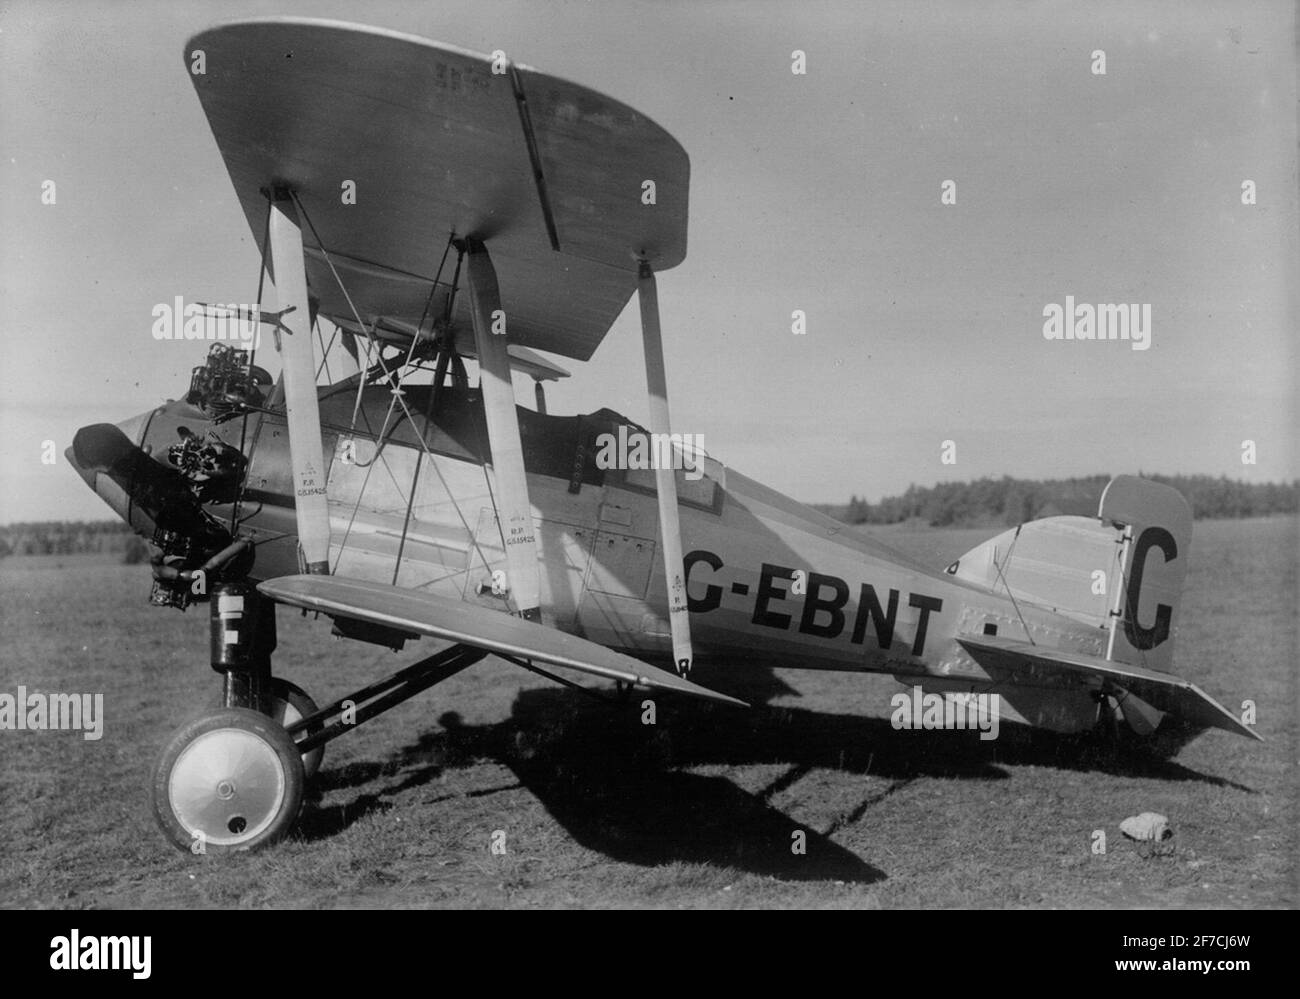 Gloster Gamecock su un campo aereo, circa 1925 motivo: Aereo britannico Gloster Gamecock con registrazione G-EBNT su un campo aereo intorno al 1925. Vista laterale. Foto Stock